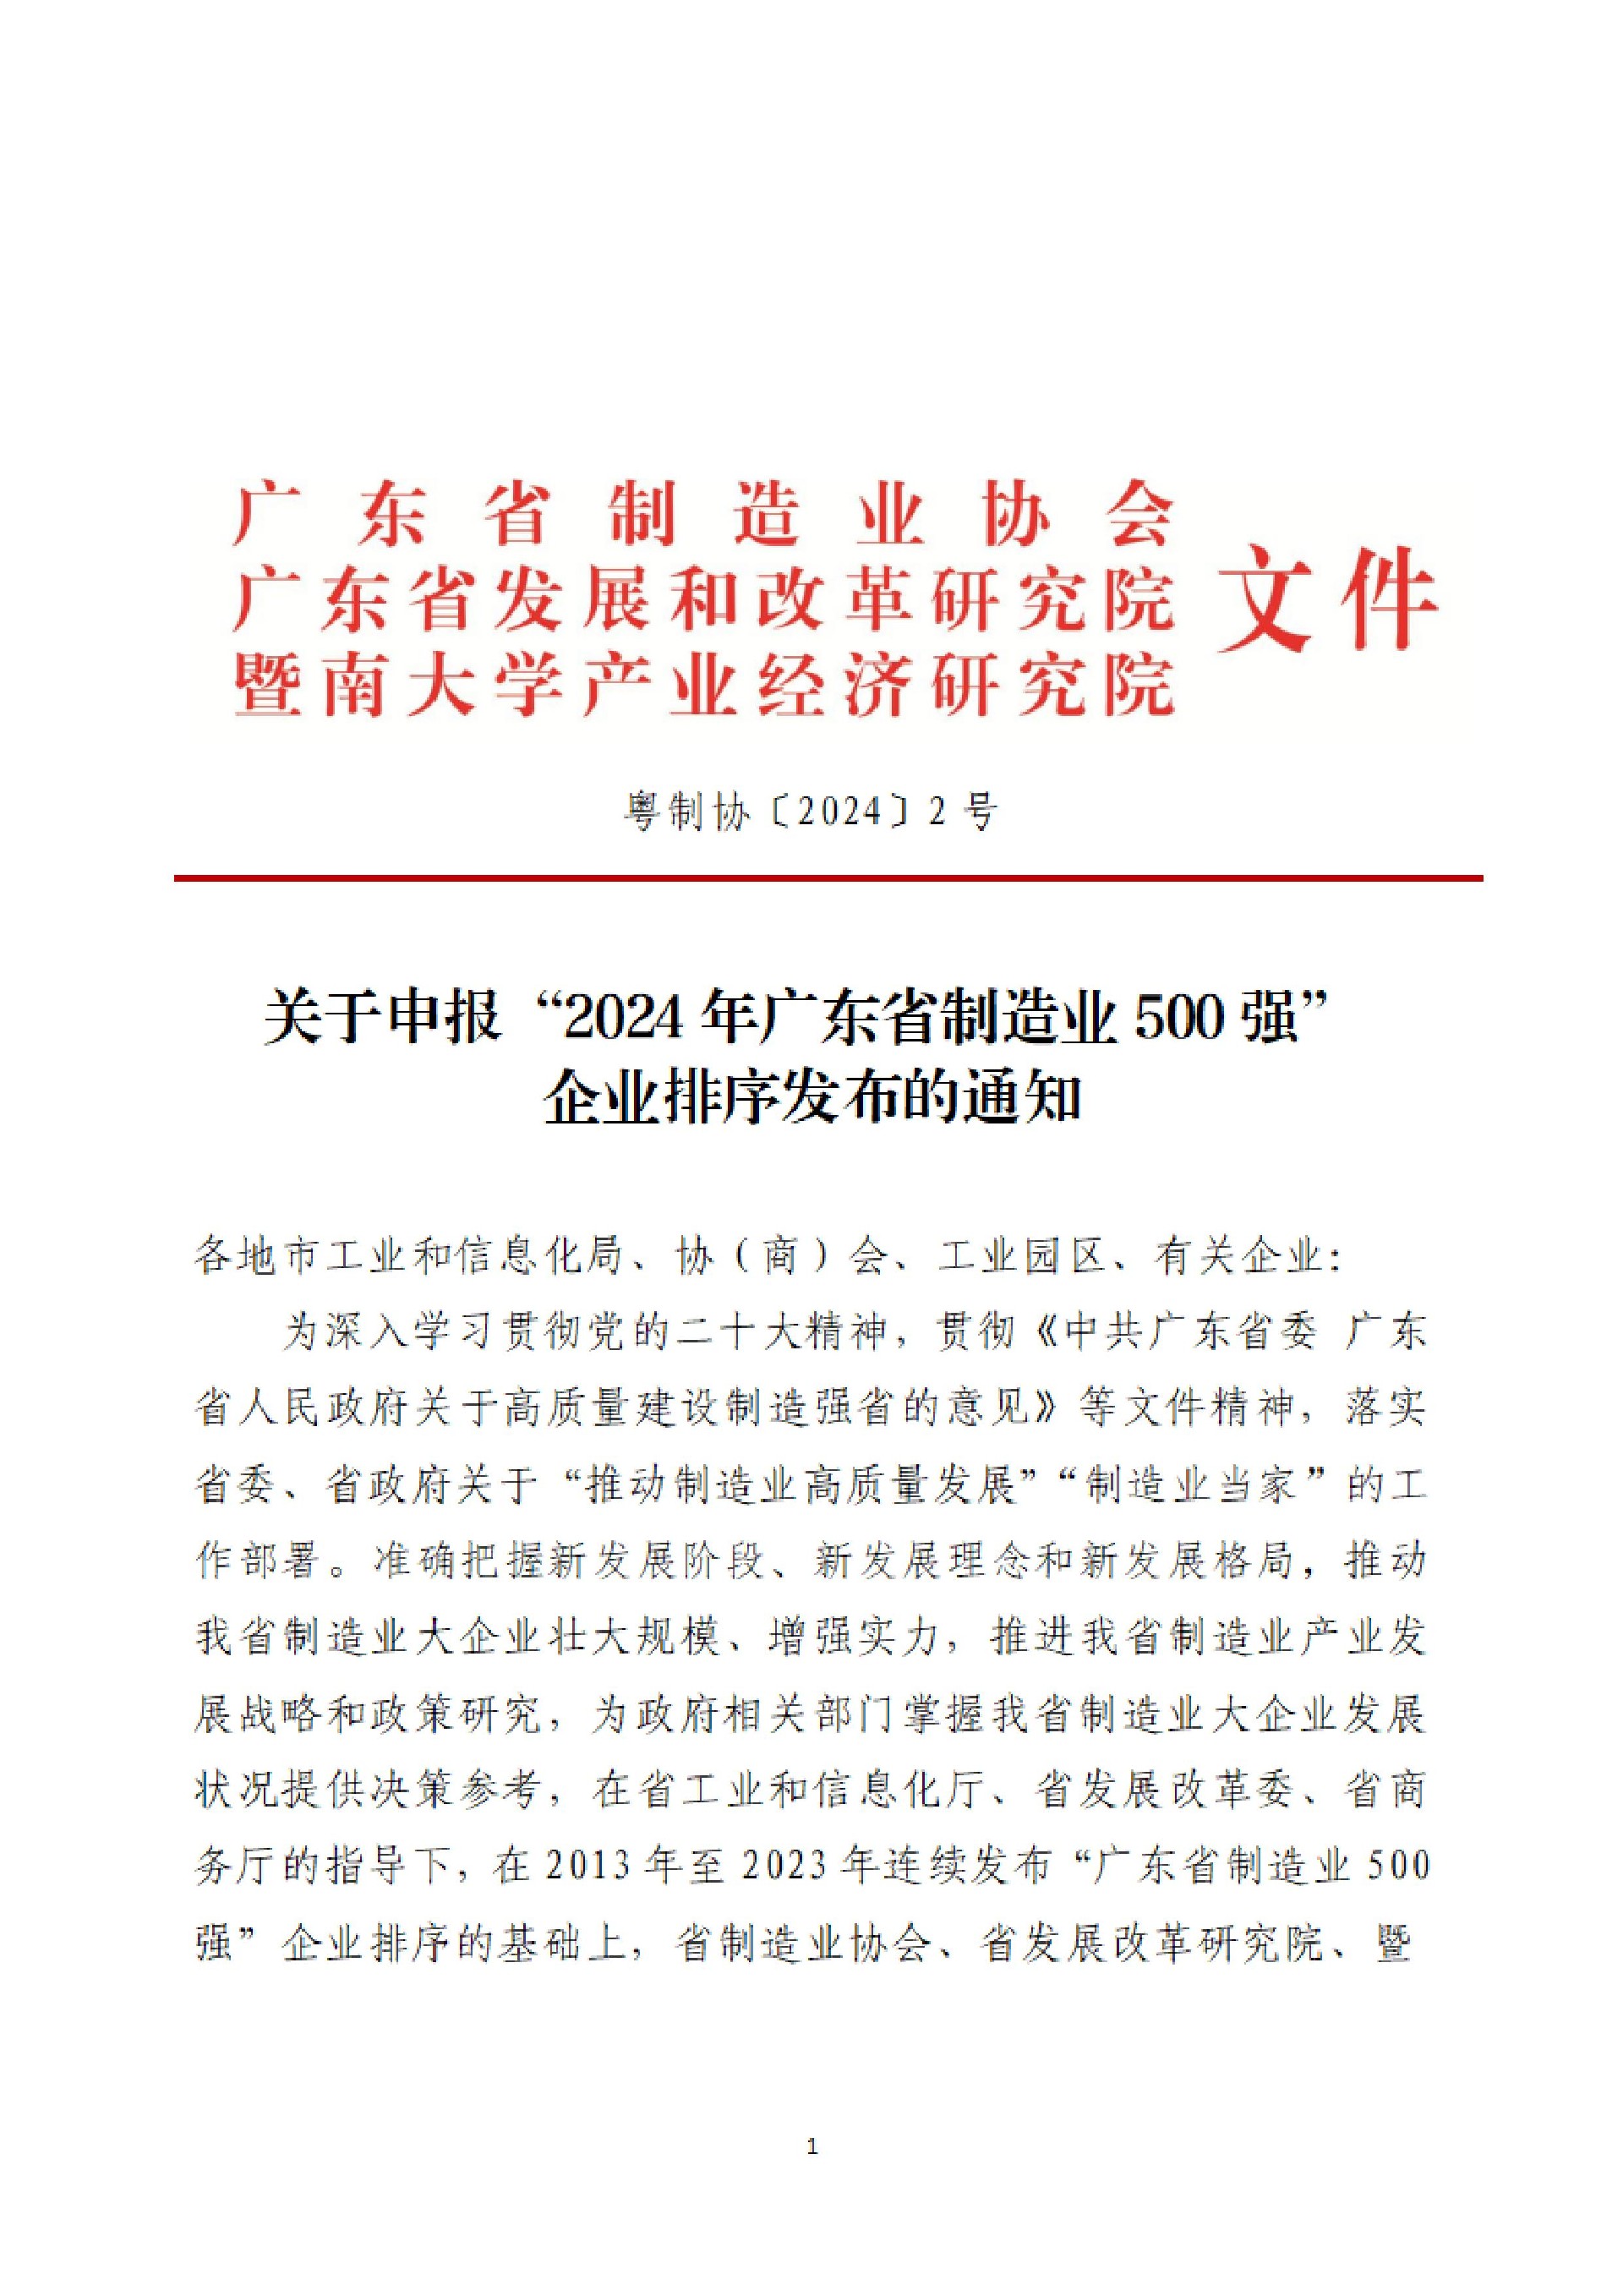 2号文-关于申报“2024年广东省制造业500强”企业排序发布的通知